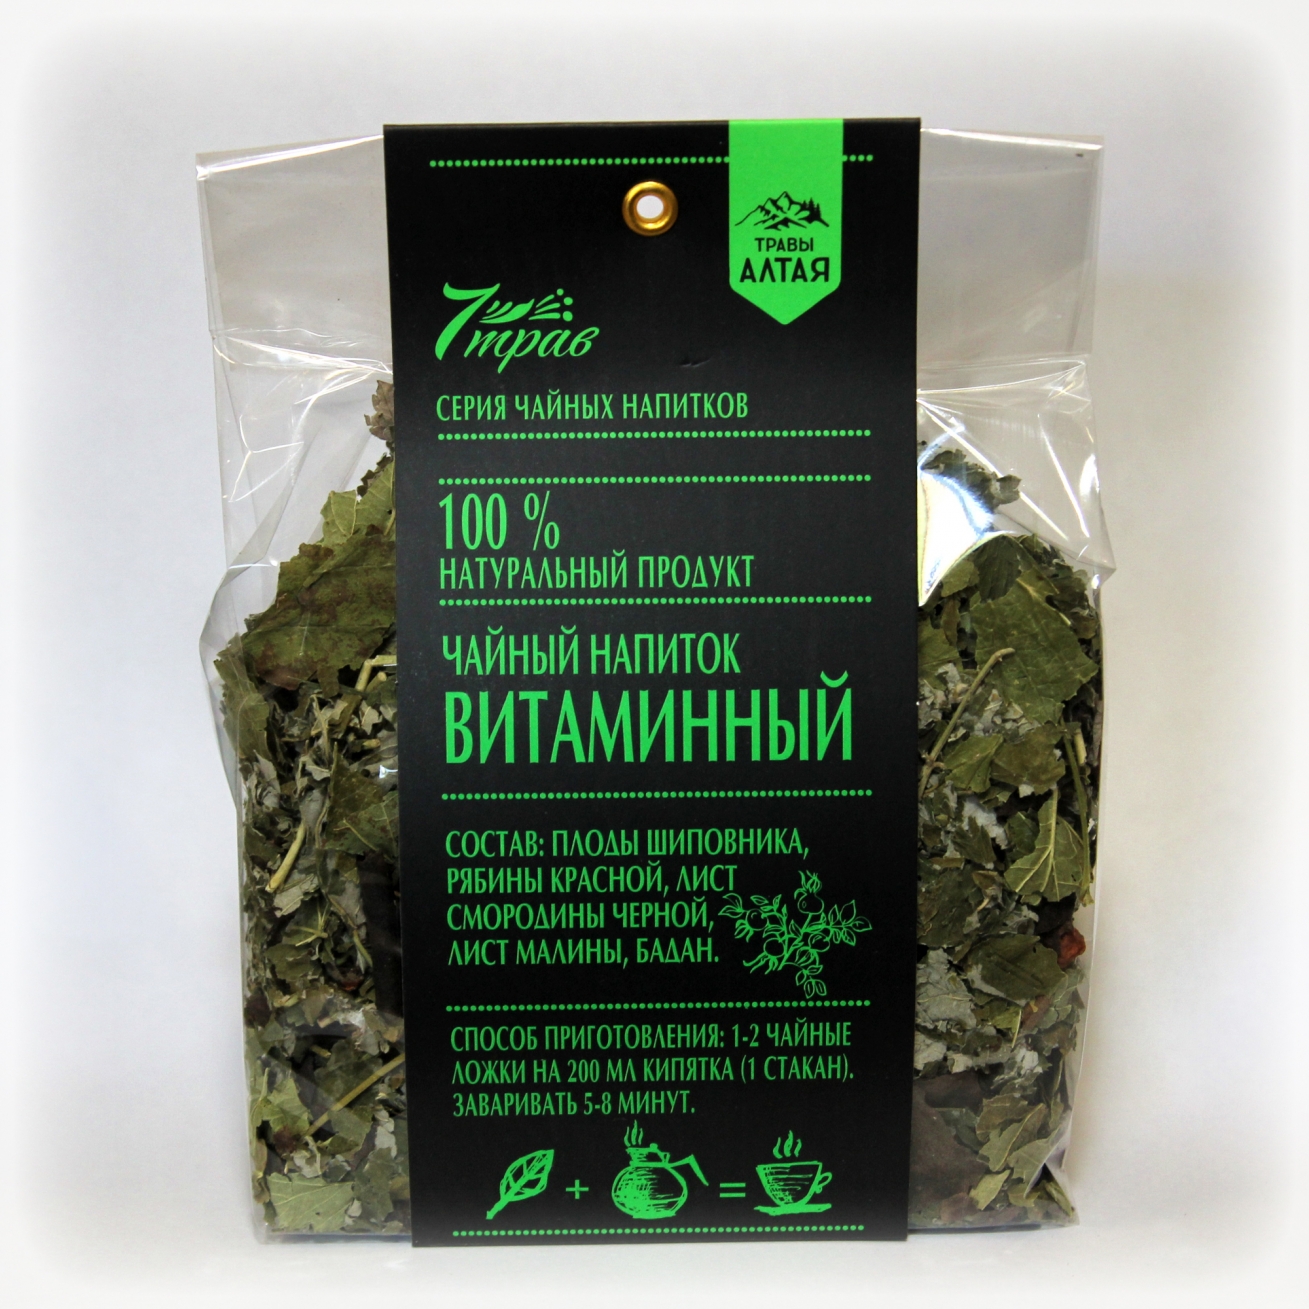 Чай влияющий на потенцию. Травяной сбор для повышения потенции. Алтайские травы для потенции. Чайный сбор для мужчин. Травяной чай сбор для мужчин.